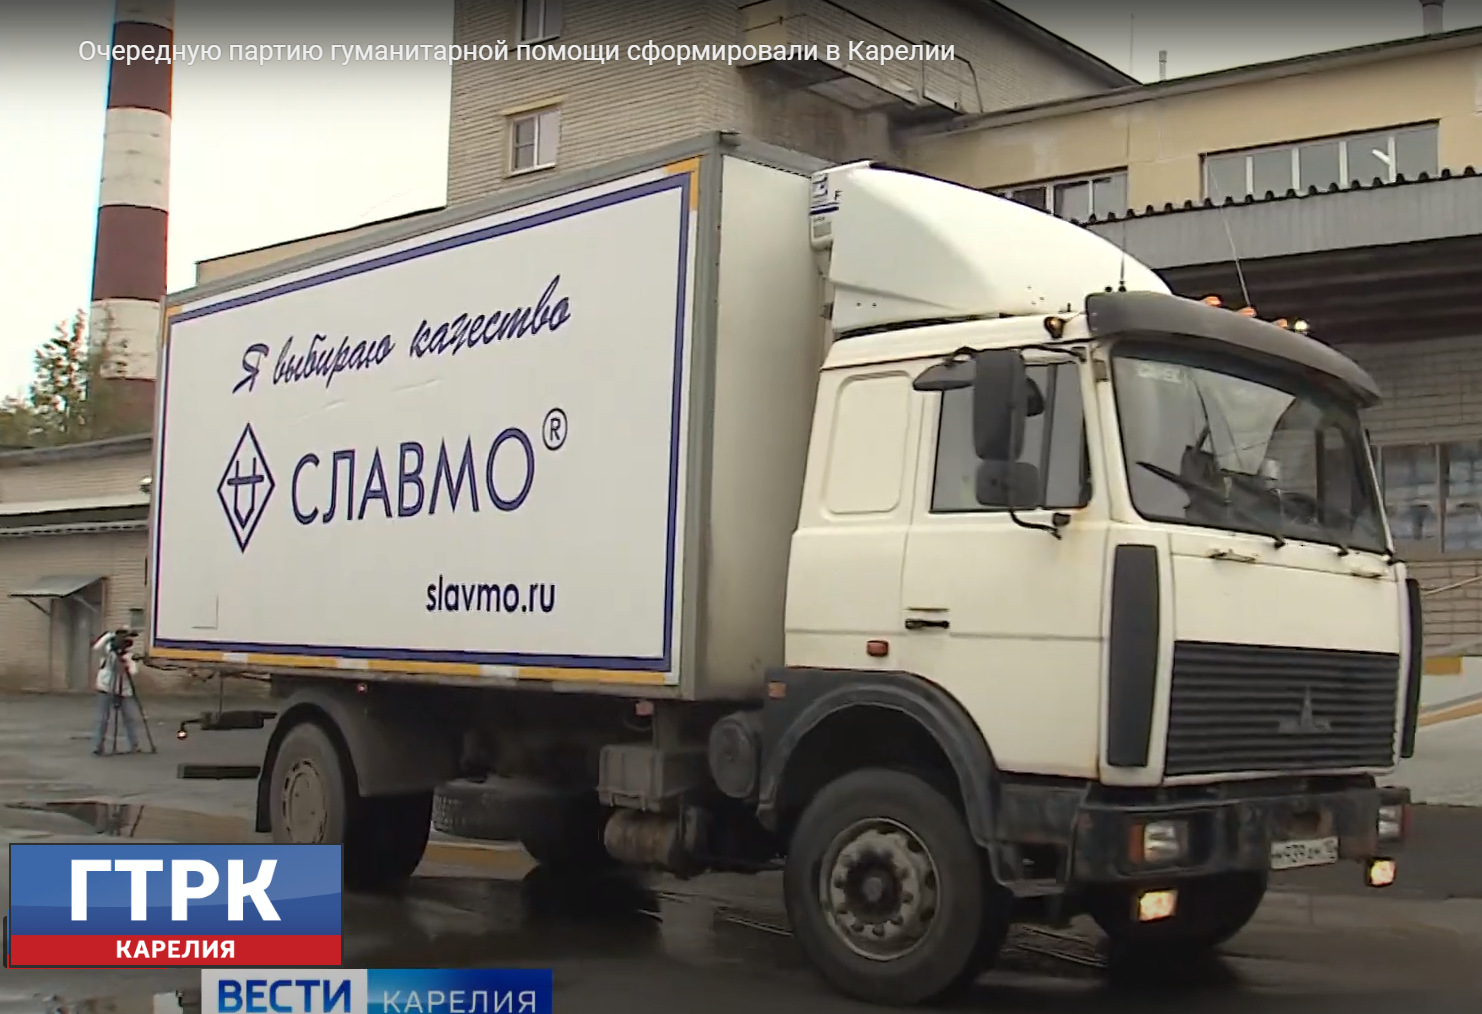 Очередная партия гуманитарной помощи сформирована в АО "Славмо".